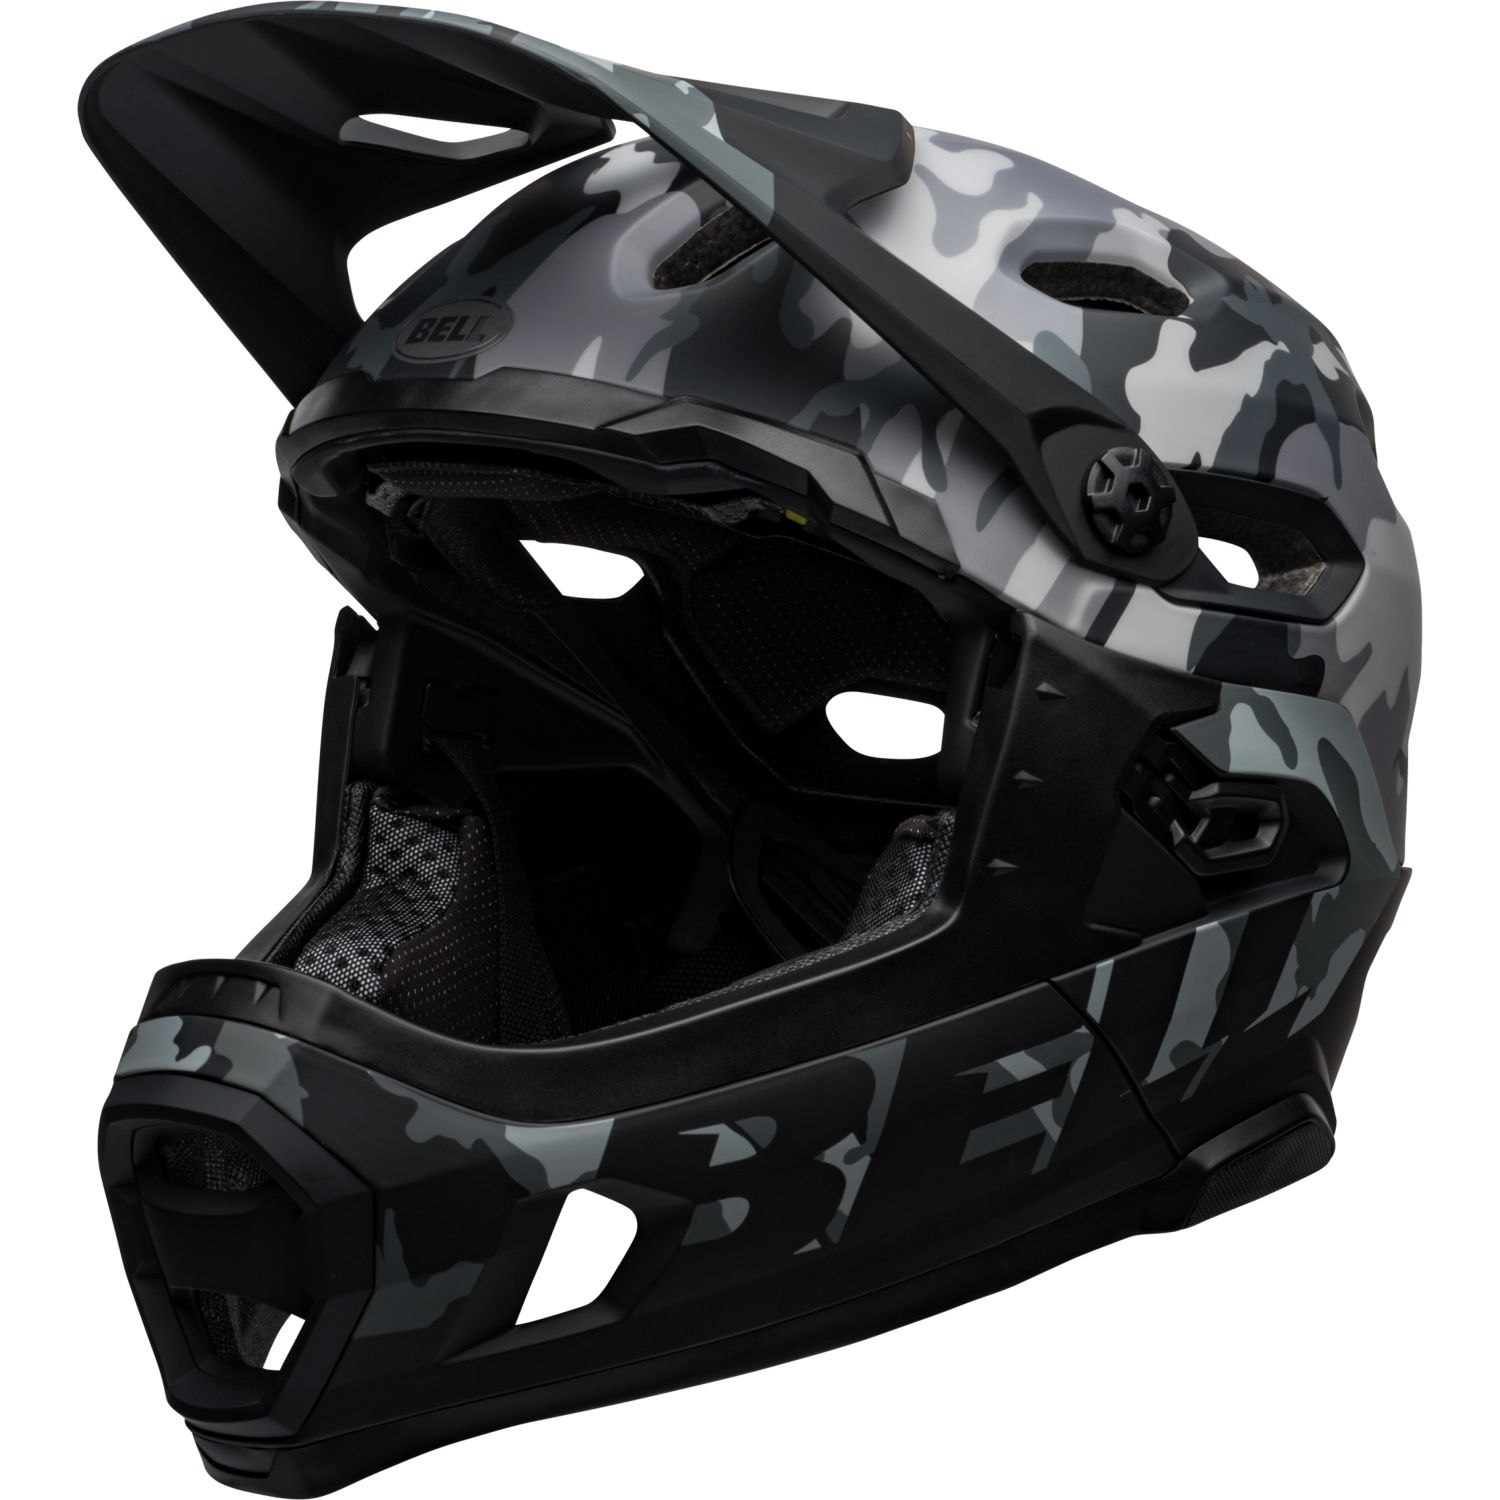 Produktbild von Bell Super DH Spherical Helm - matte/gloss black camo